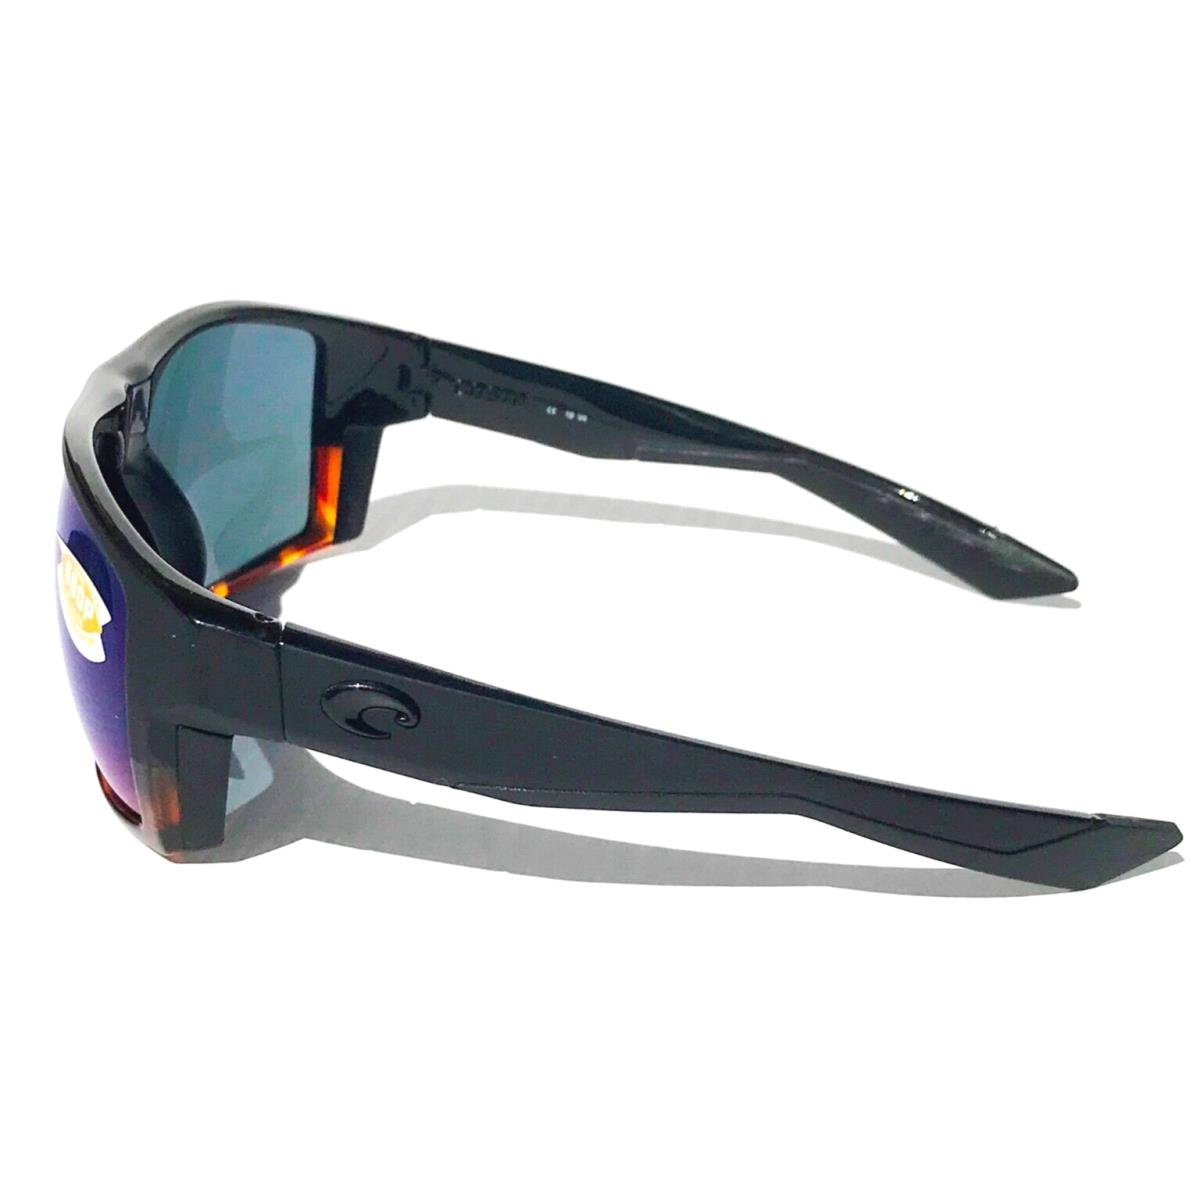 Costa Del Mar sunglasses Bloke - Frame: Black & Tortoise, Lens: Blue 10